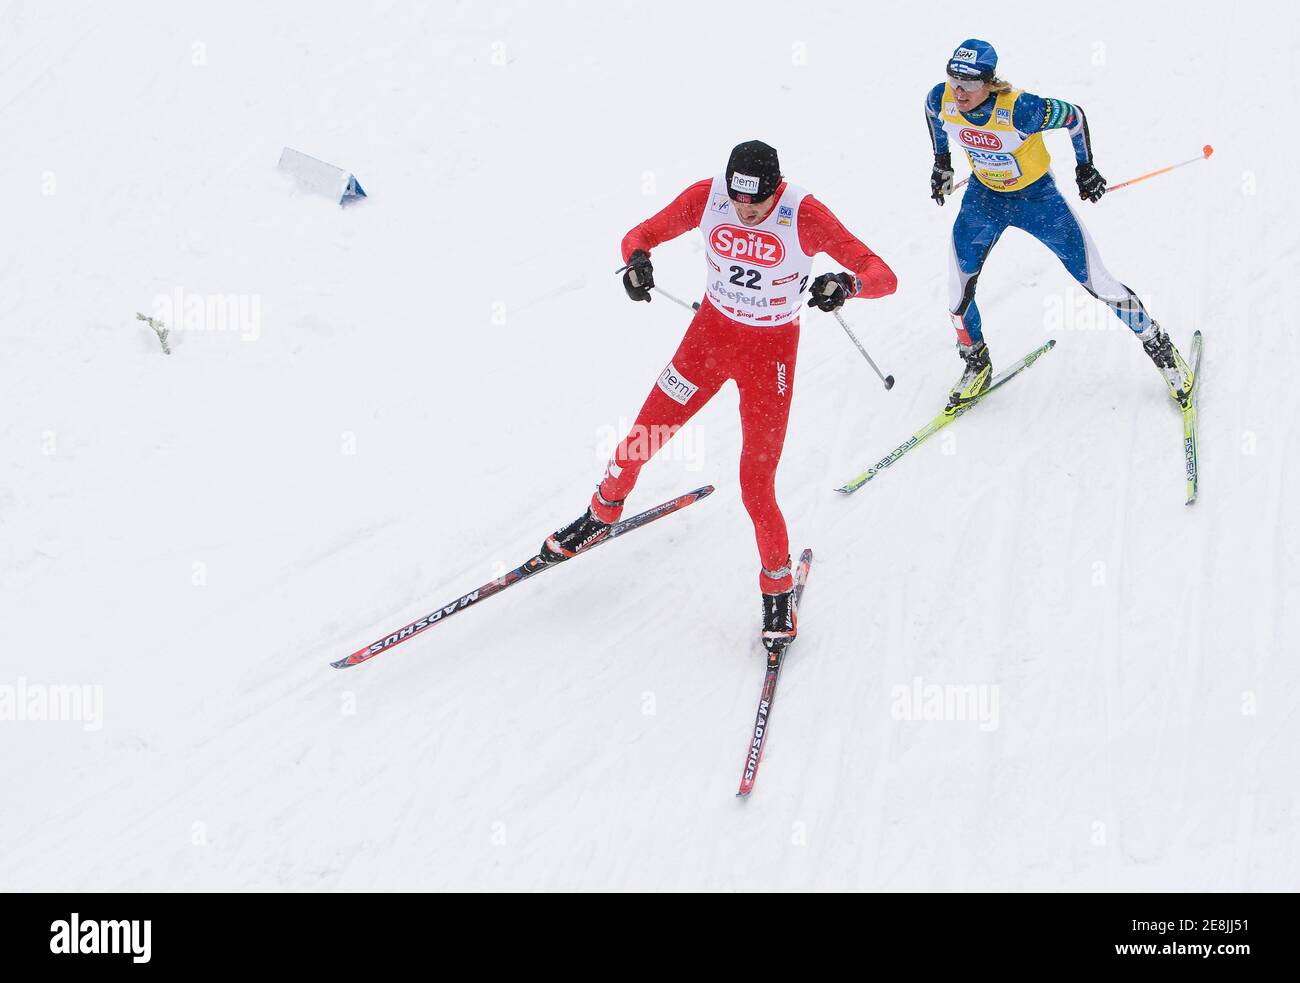 La pista norvegese Magnus Moan (fronte) e la finlandese Ansi Koivuranta ski durante la gara di 10 chilometri della Coppa del mondo combinata nordica di Seefeld, 8 febbraio 2009. REUTERS/Miro Kuzmanovic (AUSTRIA) Foto Stock